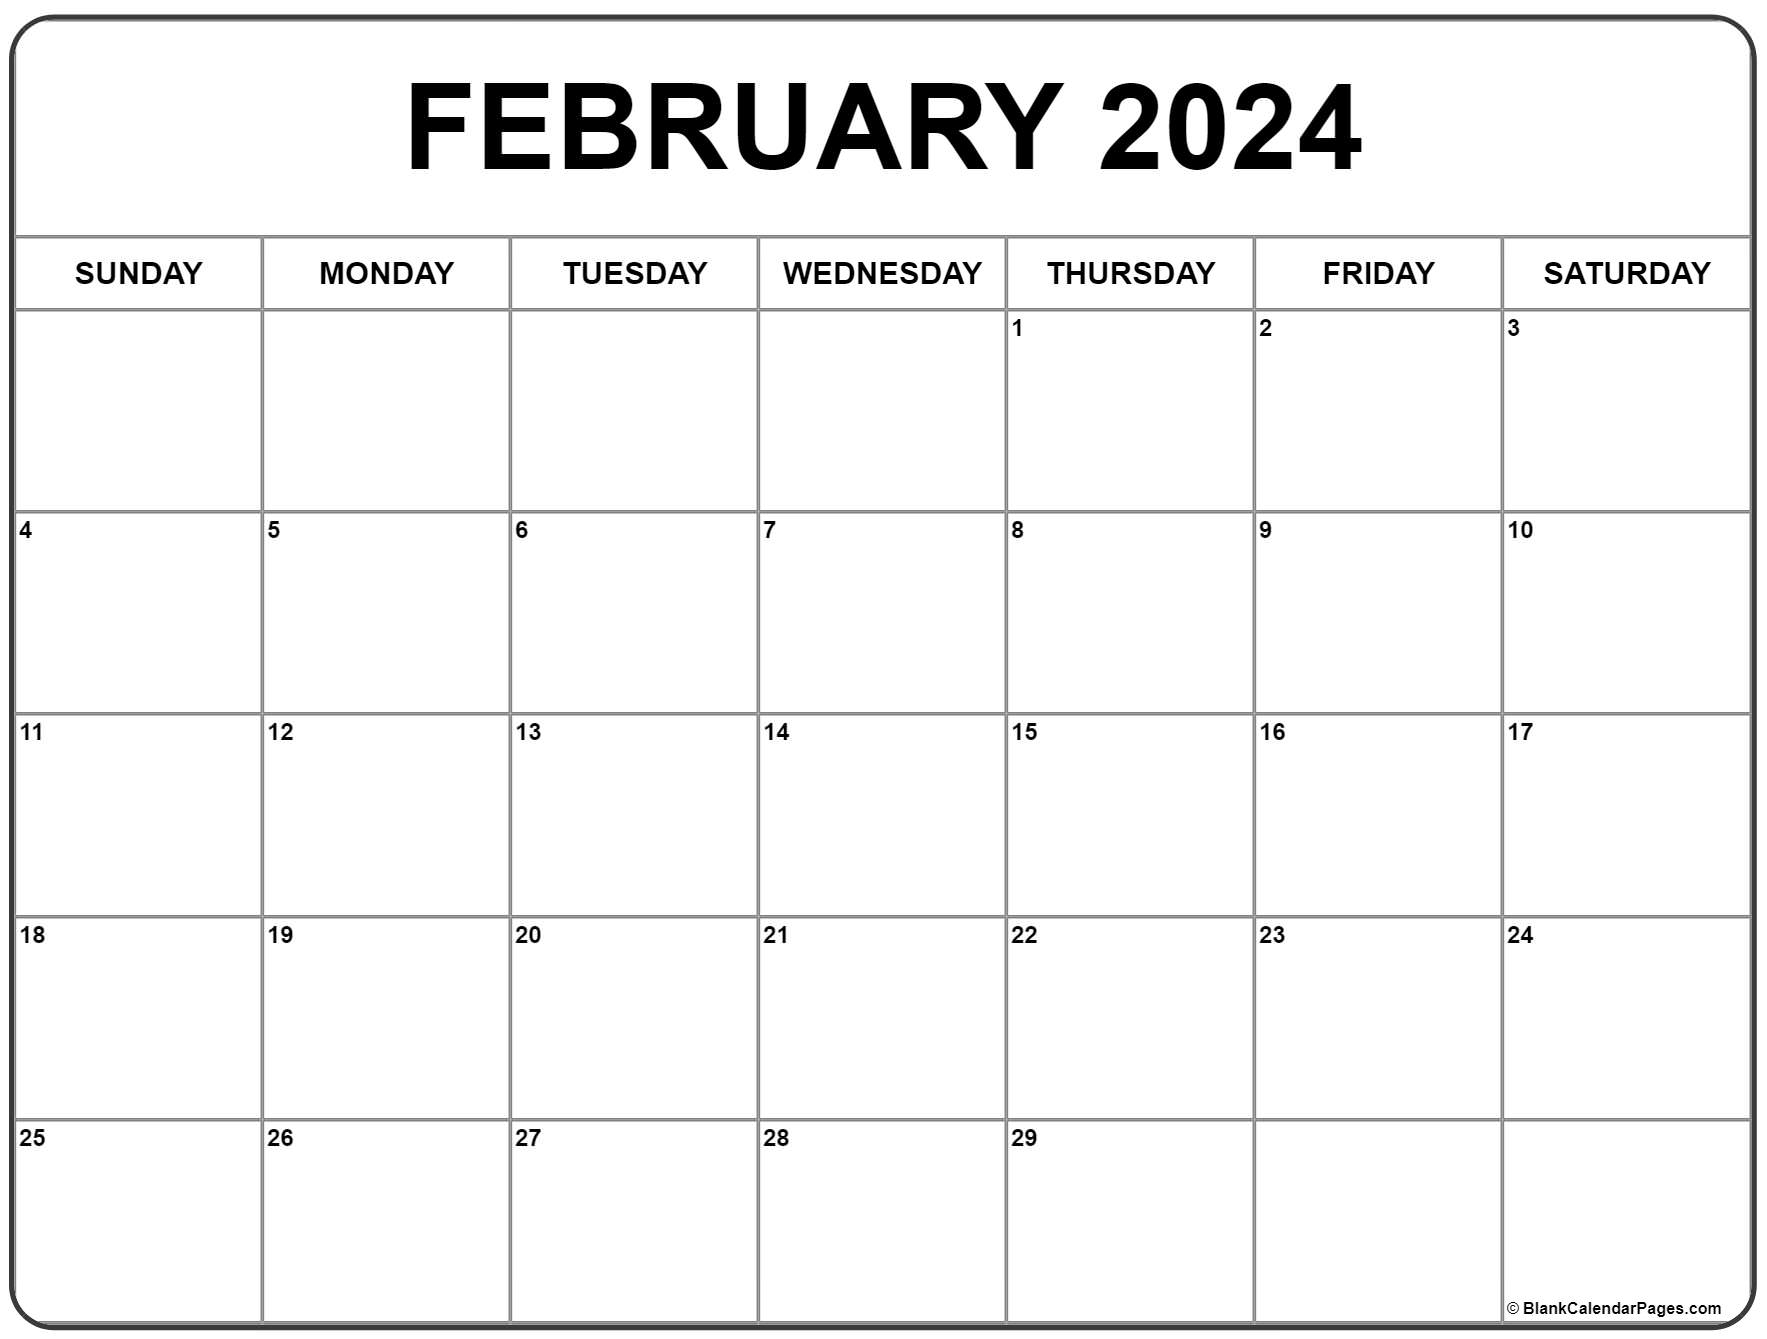 February 2024 Calendar | Free Printable Calendar for Calendar 2024 February Month Printable